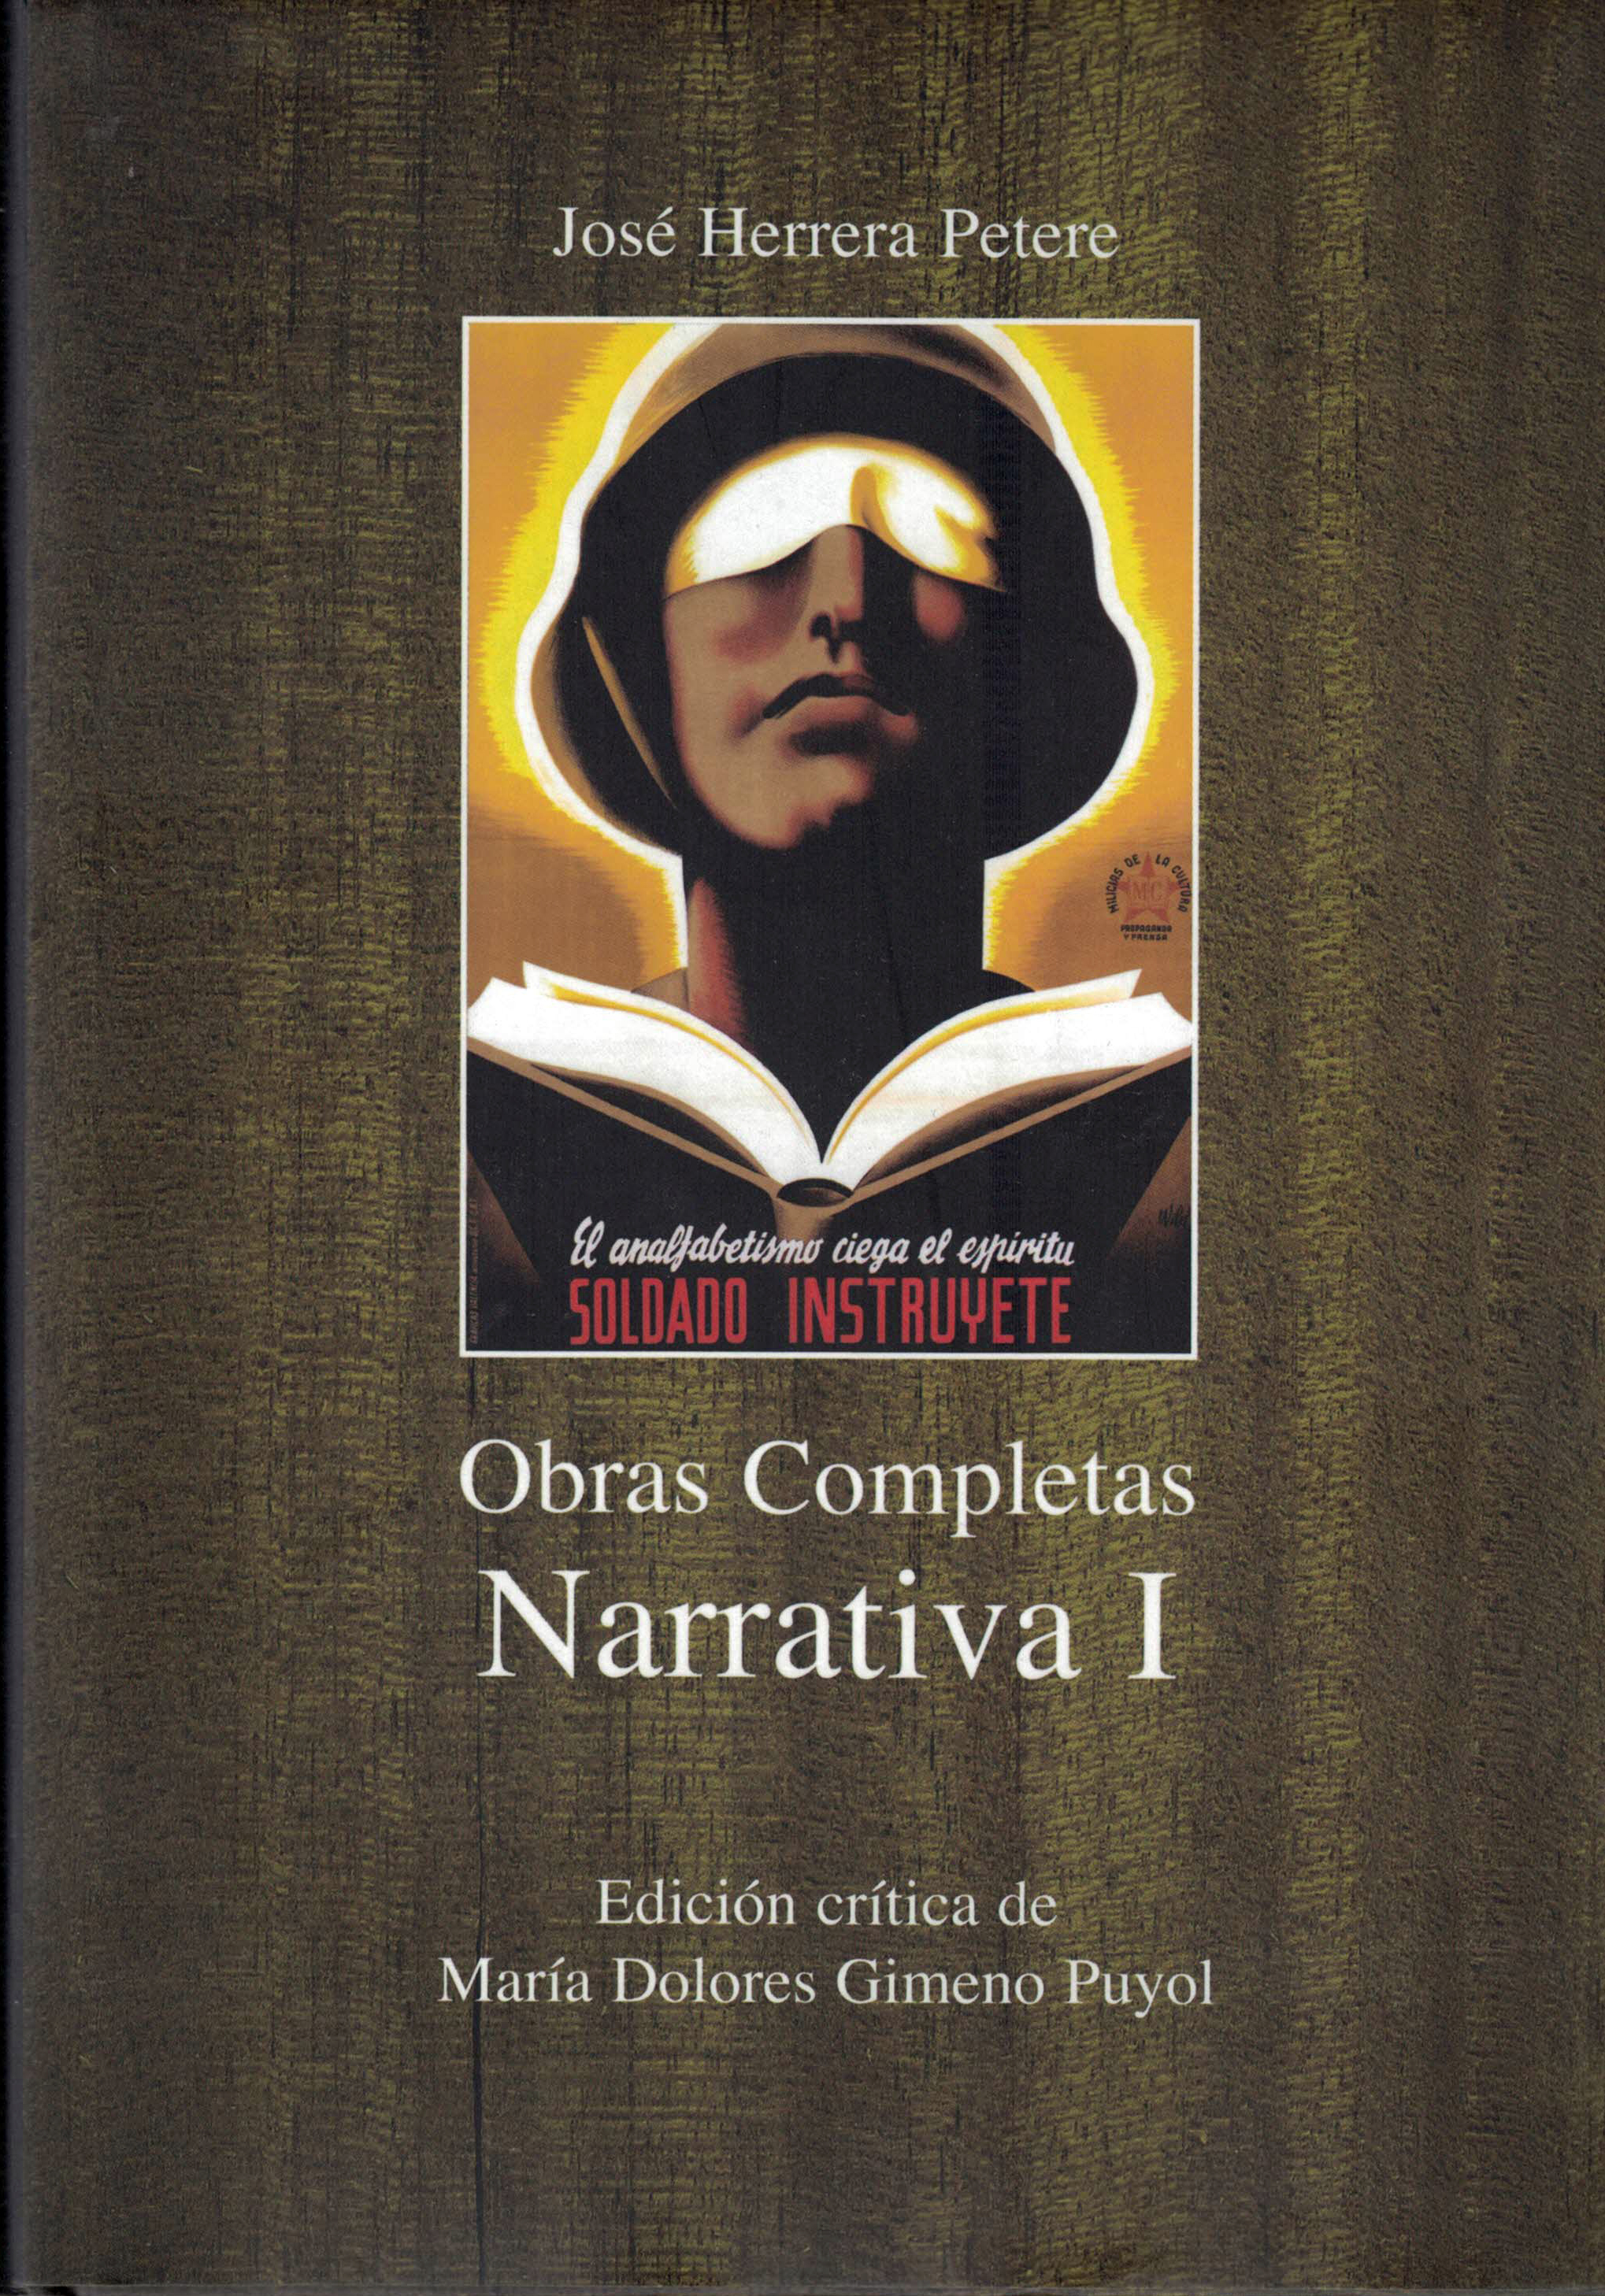 Obras Completas Narrativa I, José Herrera Petere